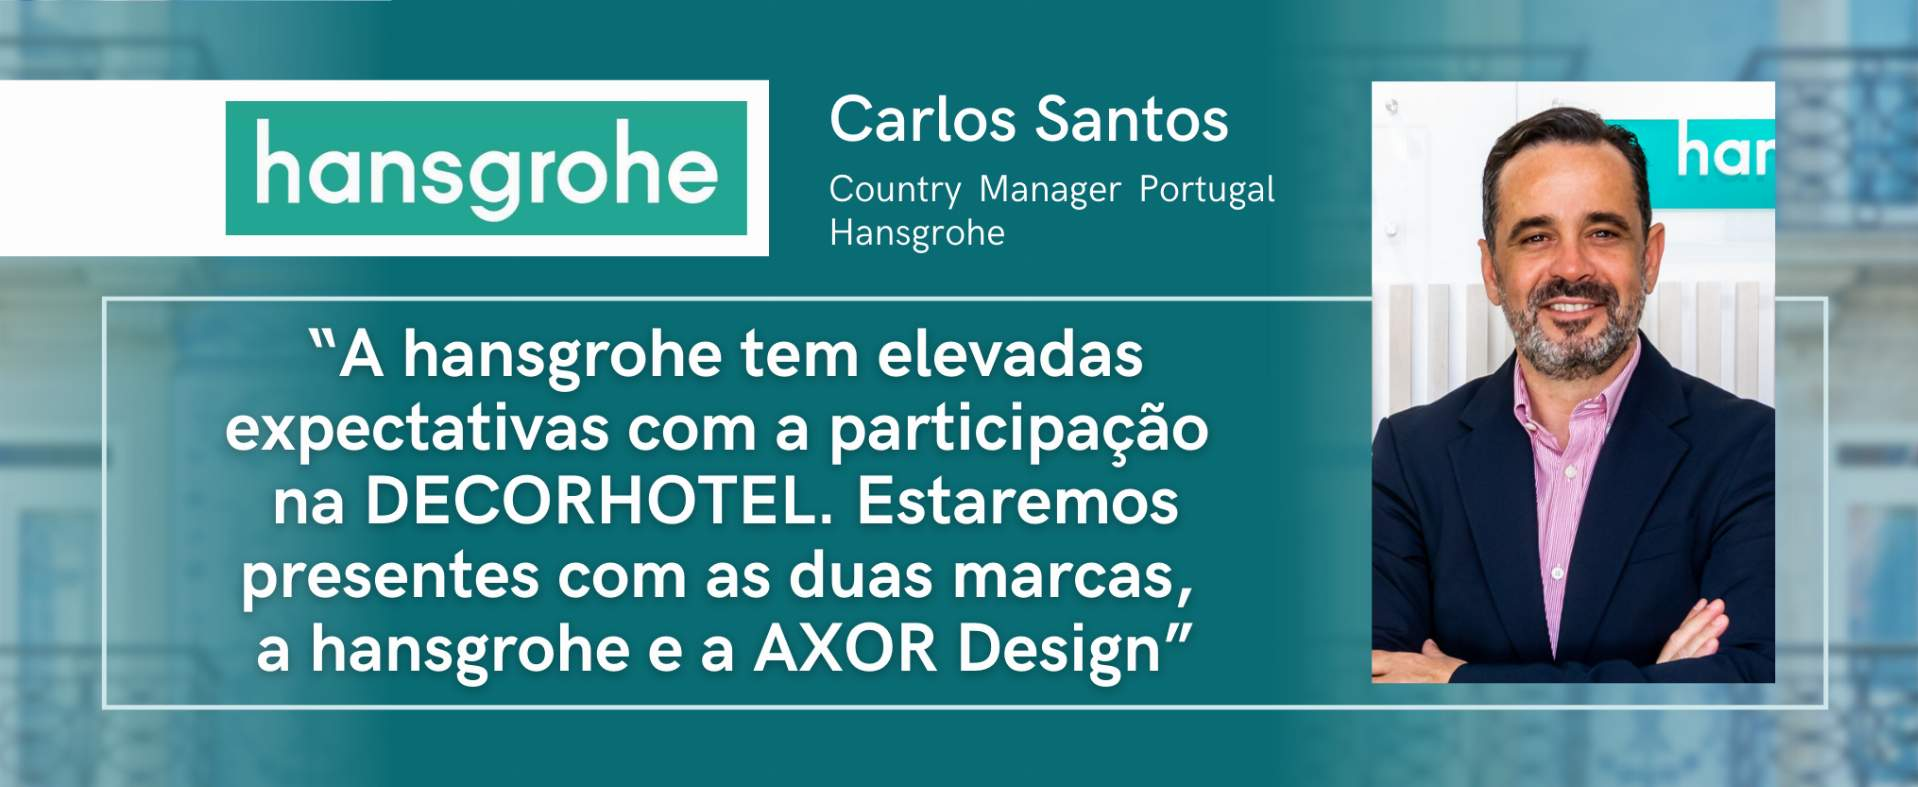 hansgrohe : "Nous avons de grandes attentes avec la participation à DECORHOTEL. Nous serons présents avec les deux marques, hansgrohe et AXOR Design".